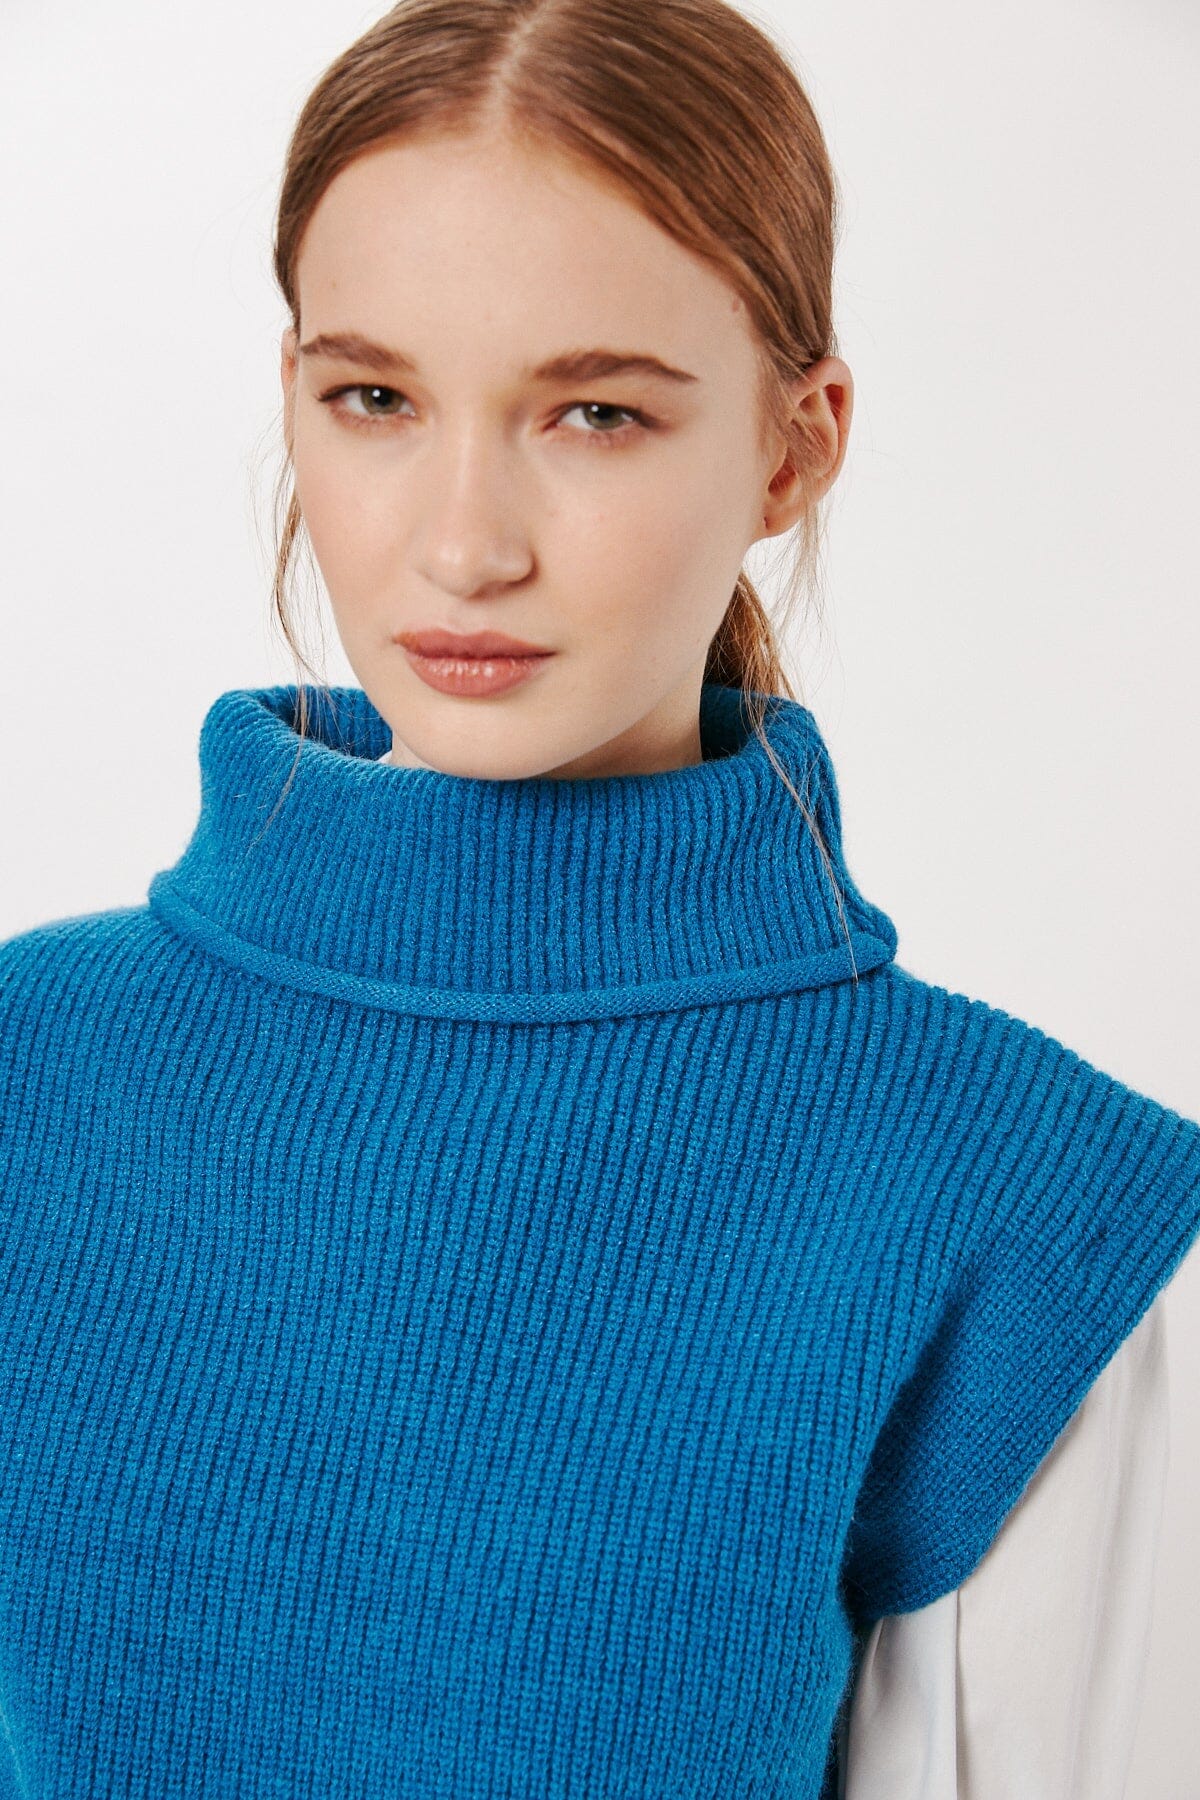 BELLINI TURTLENECK VEST (PETROL) Sweater DELUC 